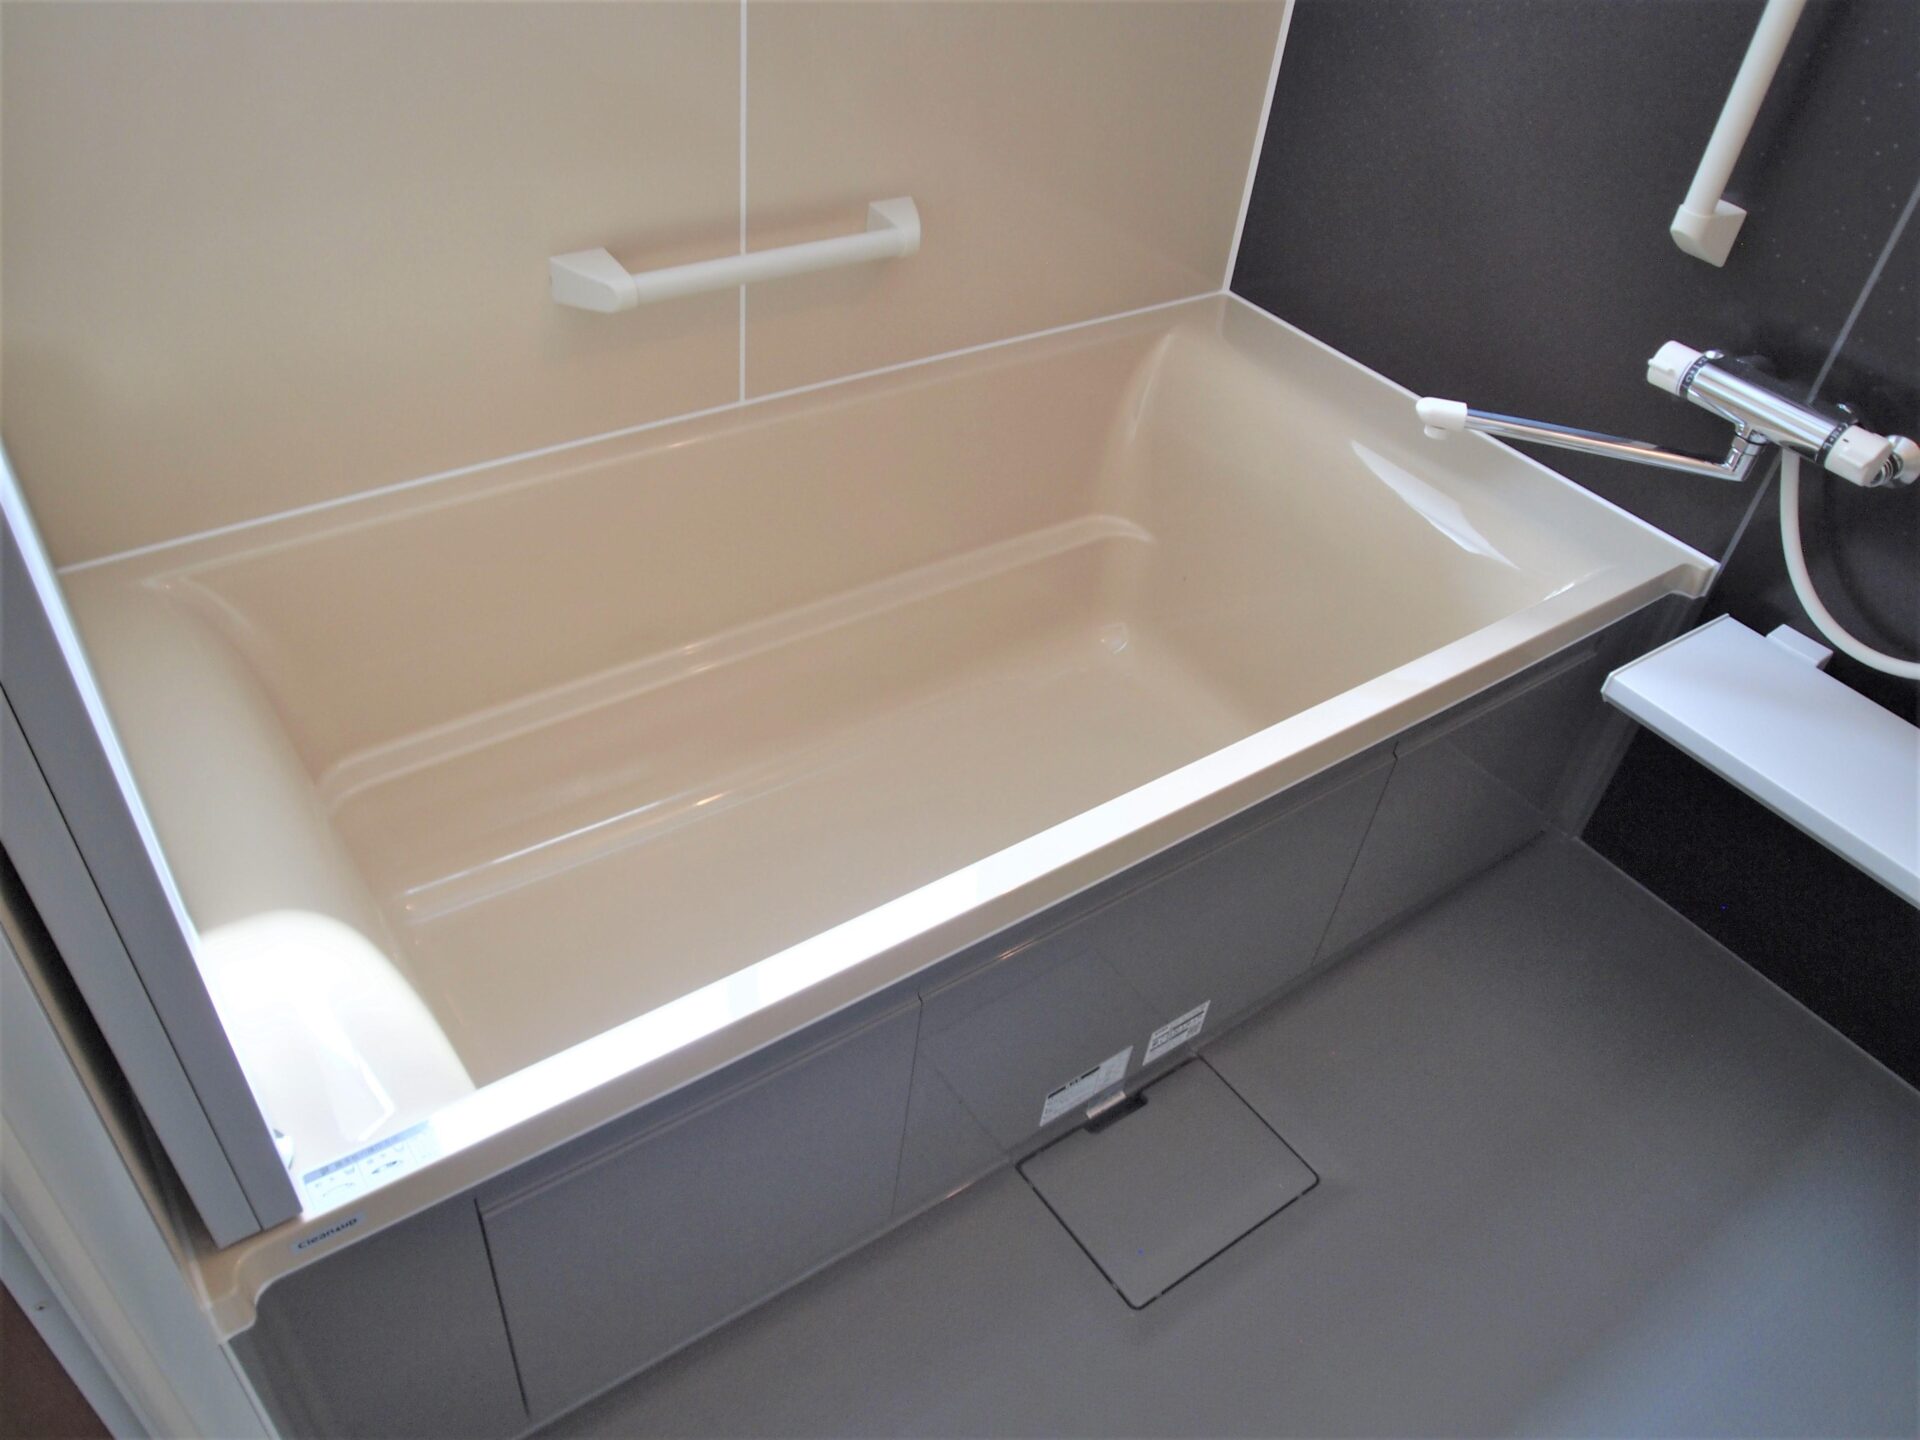 浴槽からの立ち上がりにも洗い場移動にも安心な手すりを設置。